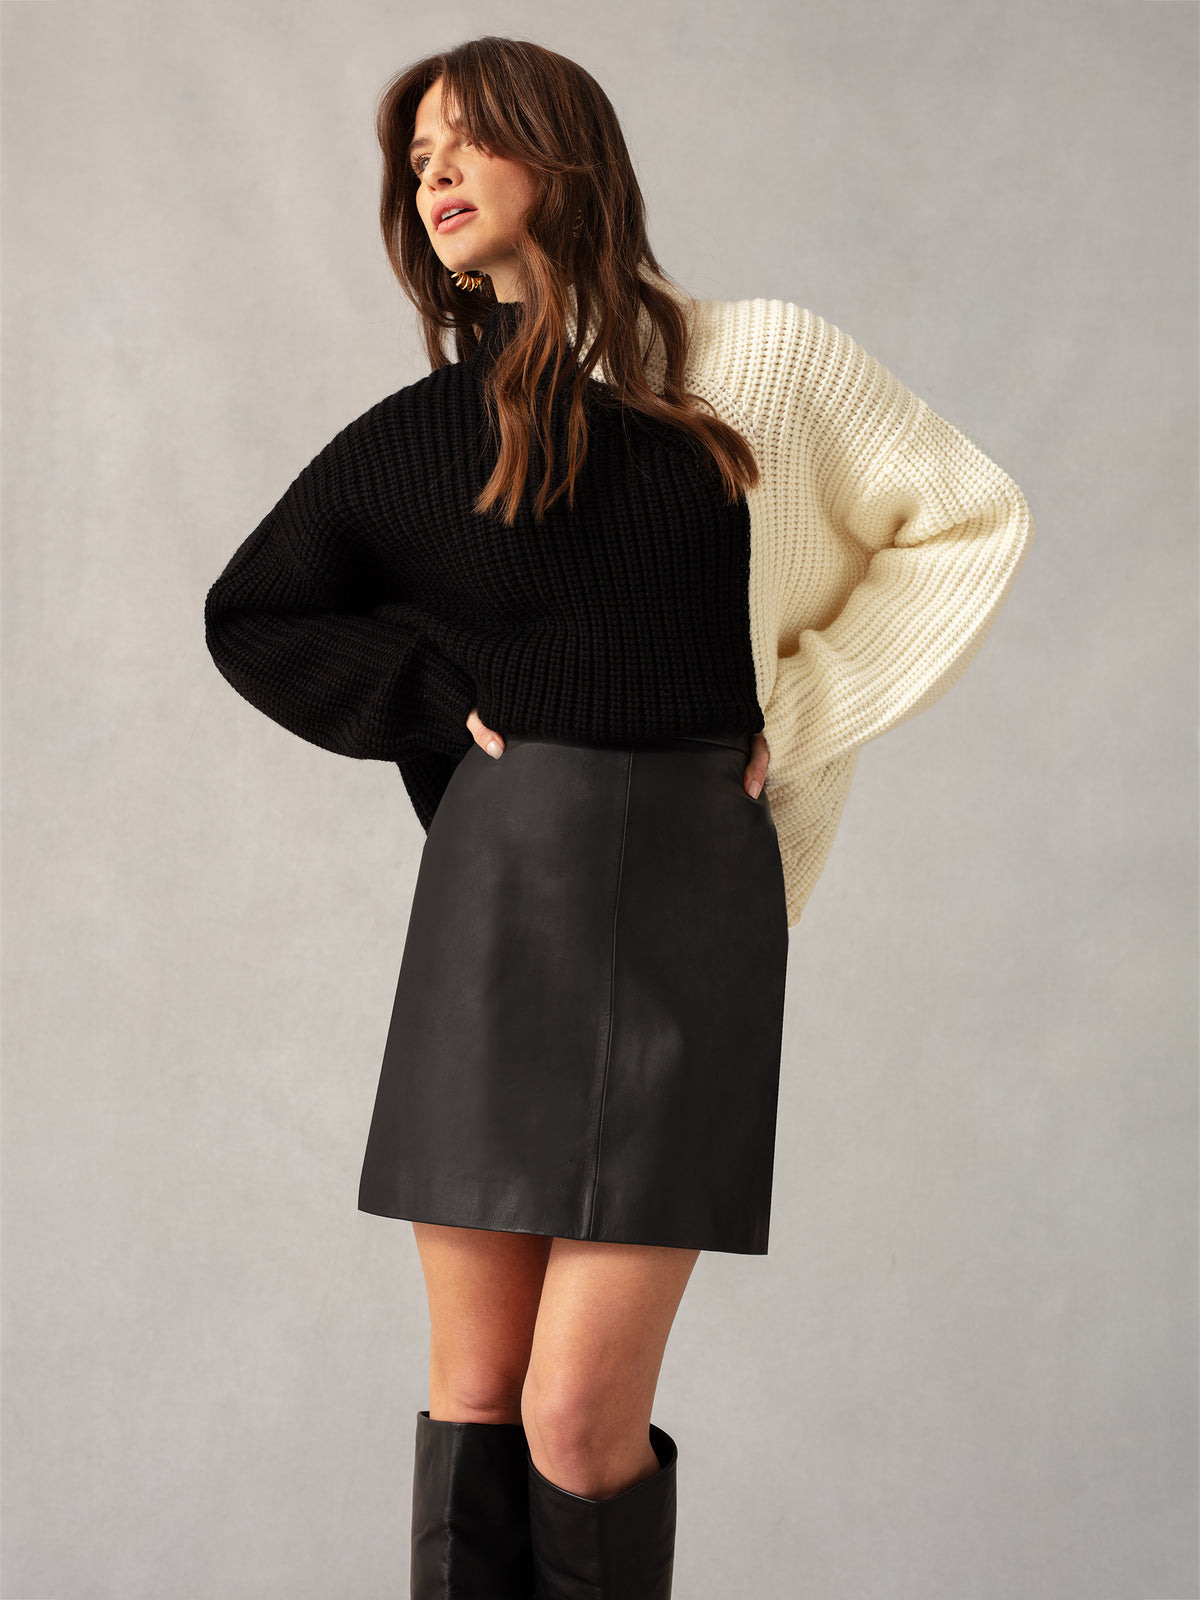 Black Leather Mini Skirt